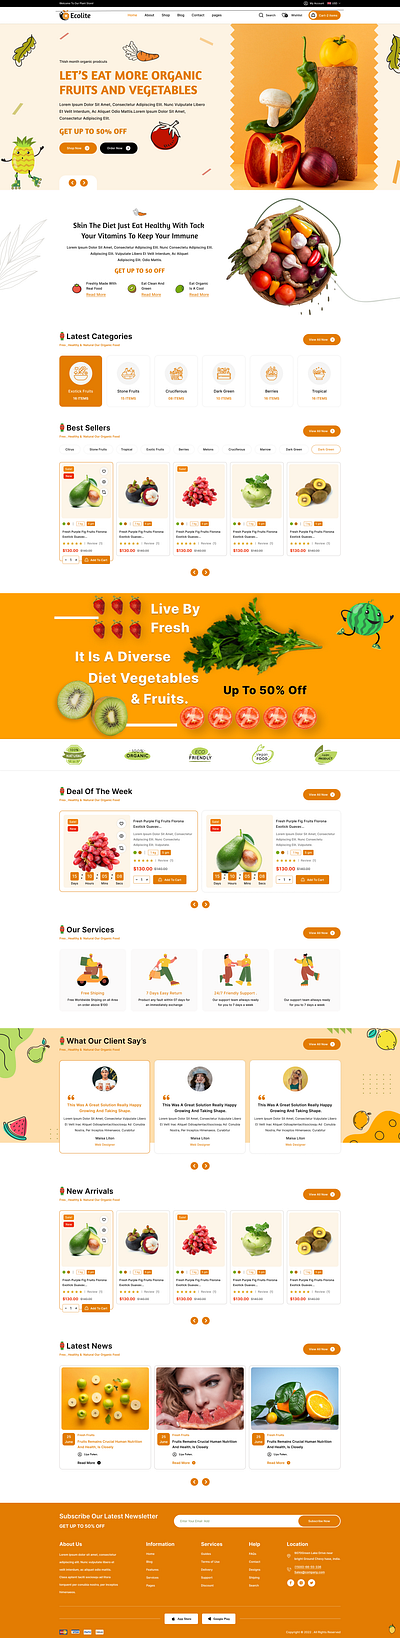 Ecolite - Fruits & Vegitable's Delivering Website ui